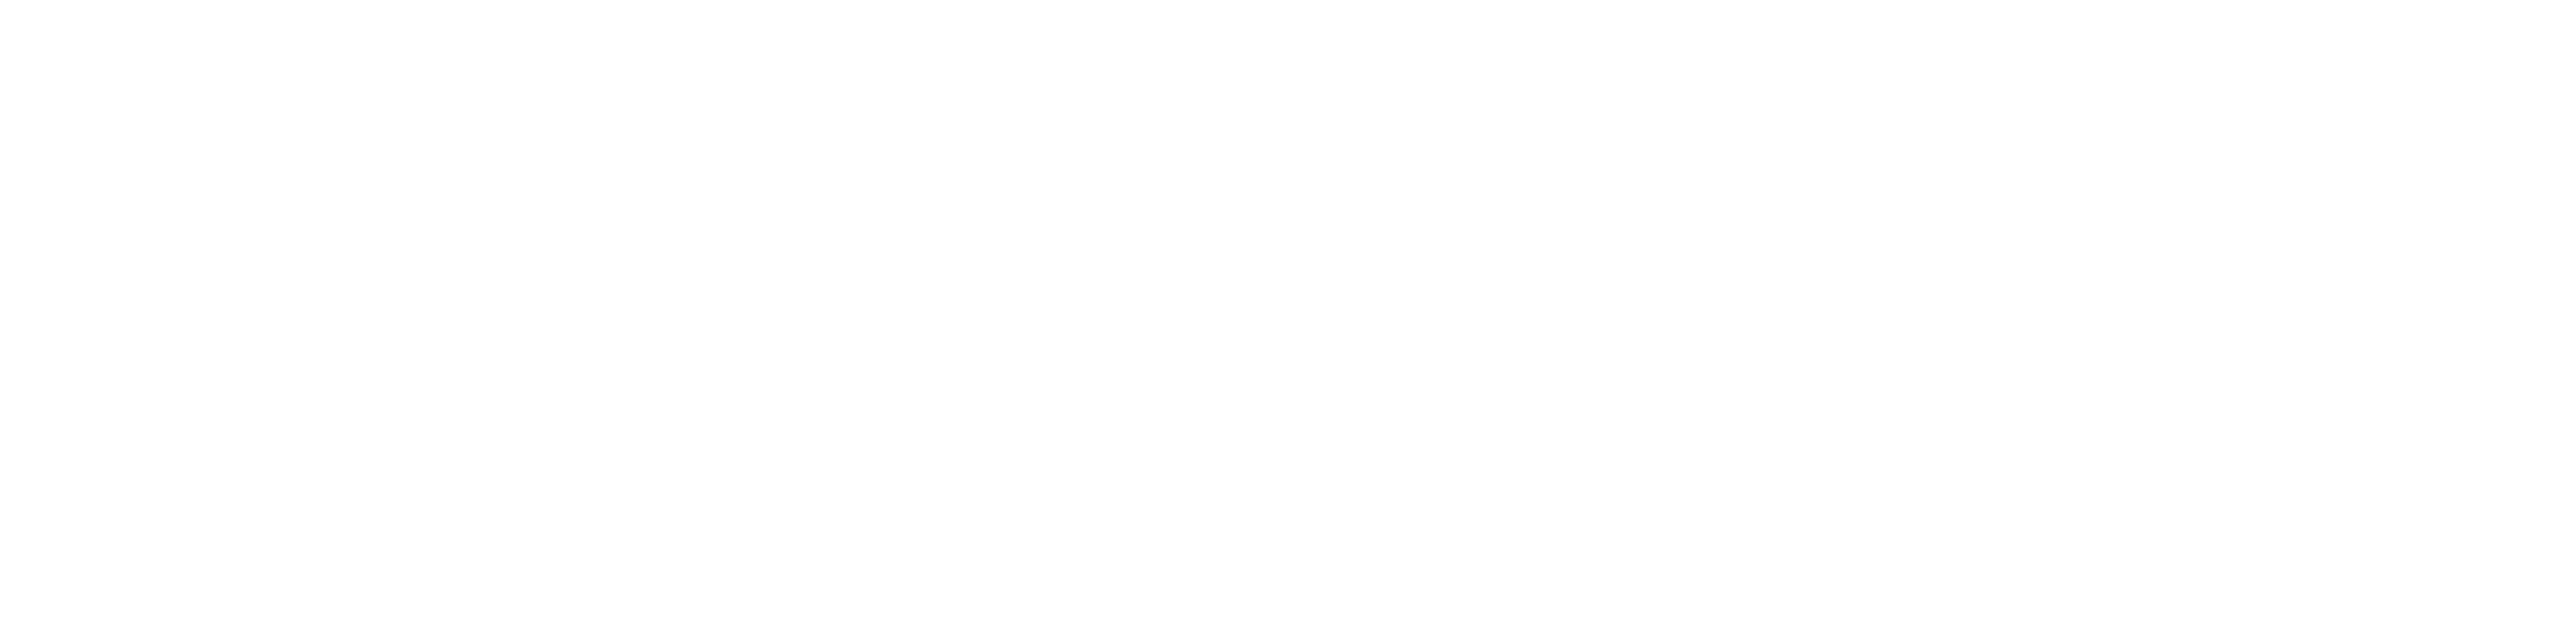 Liberale Hochschulgruppe Aachen